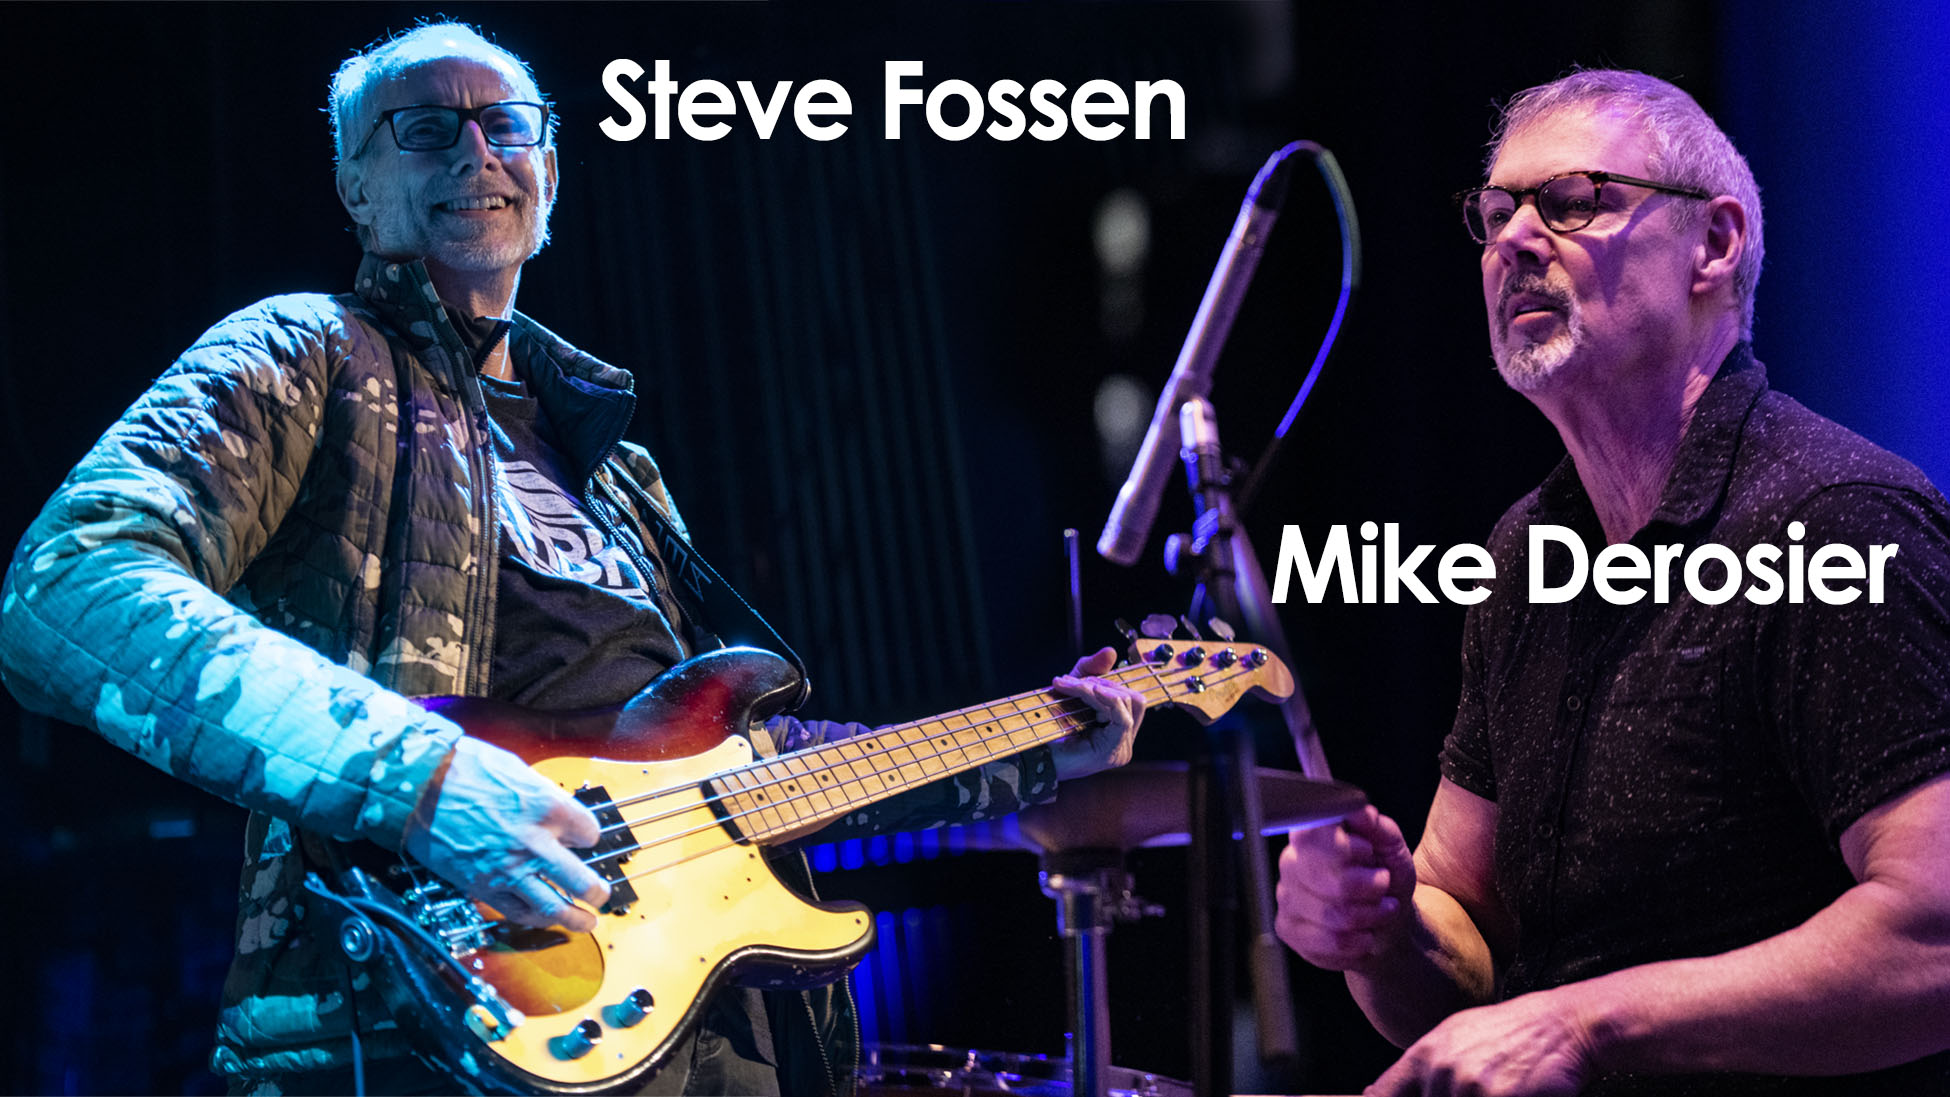 Steve Fossen and Mike Derosier of Heart